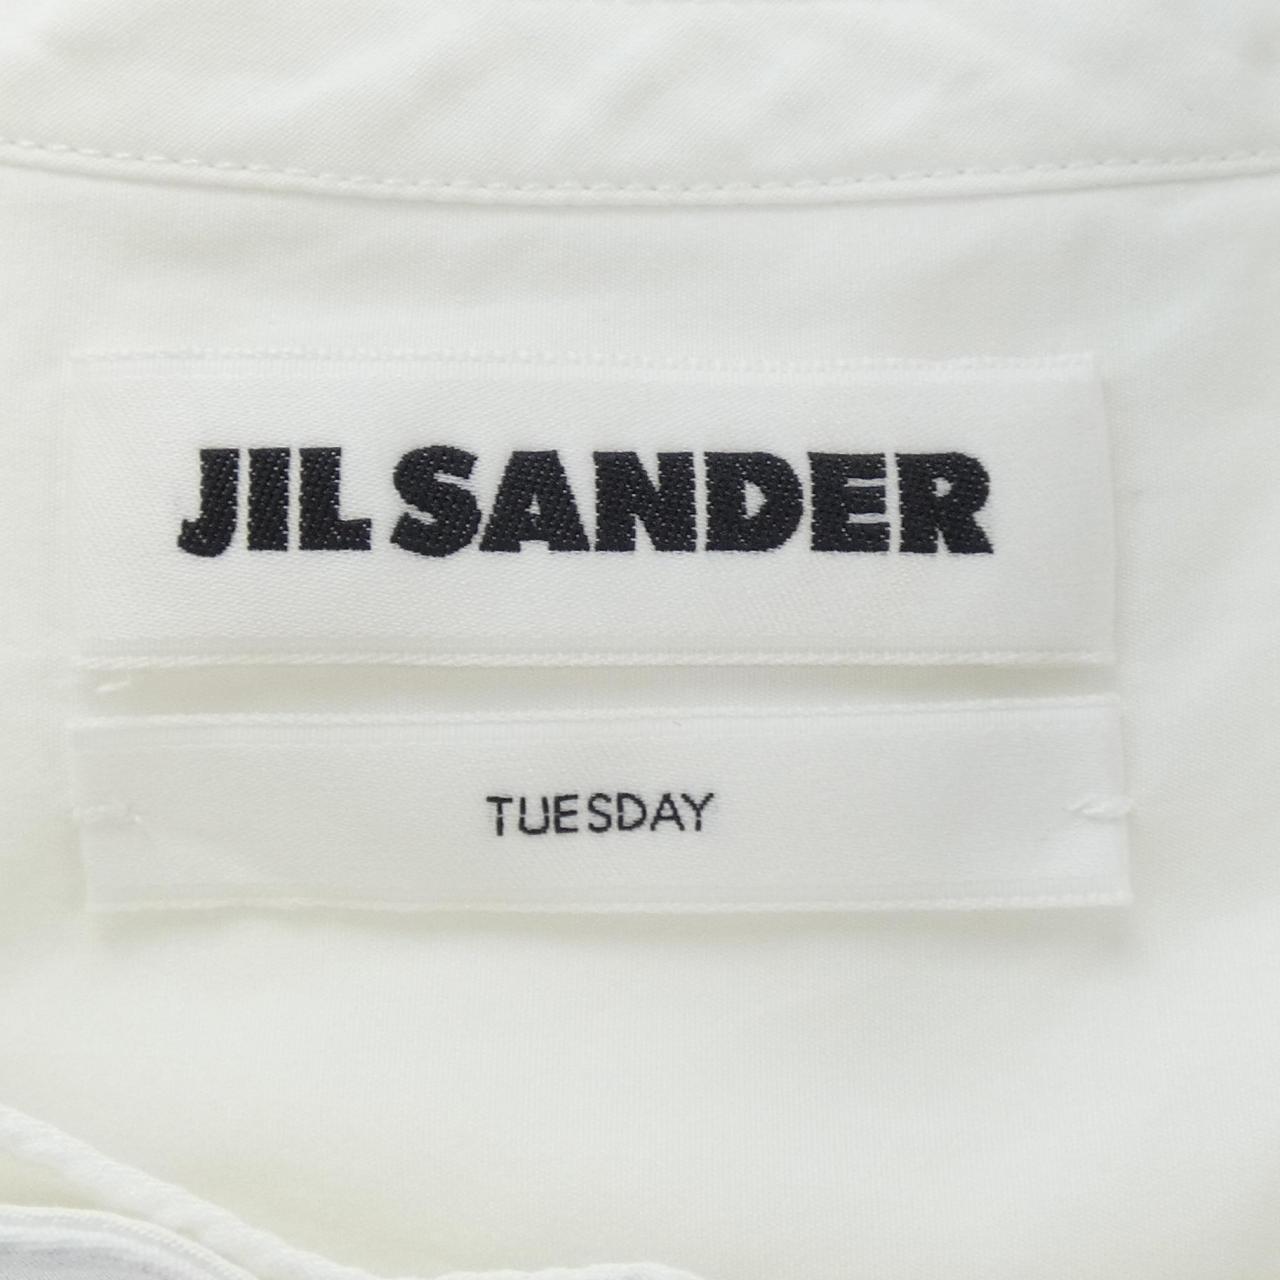 JIL SANDER Jil Sander shirt